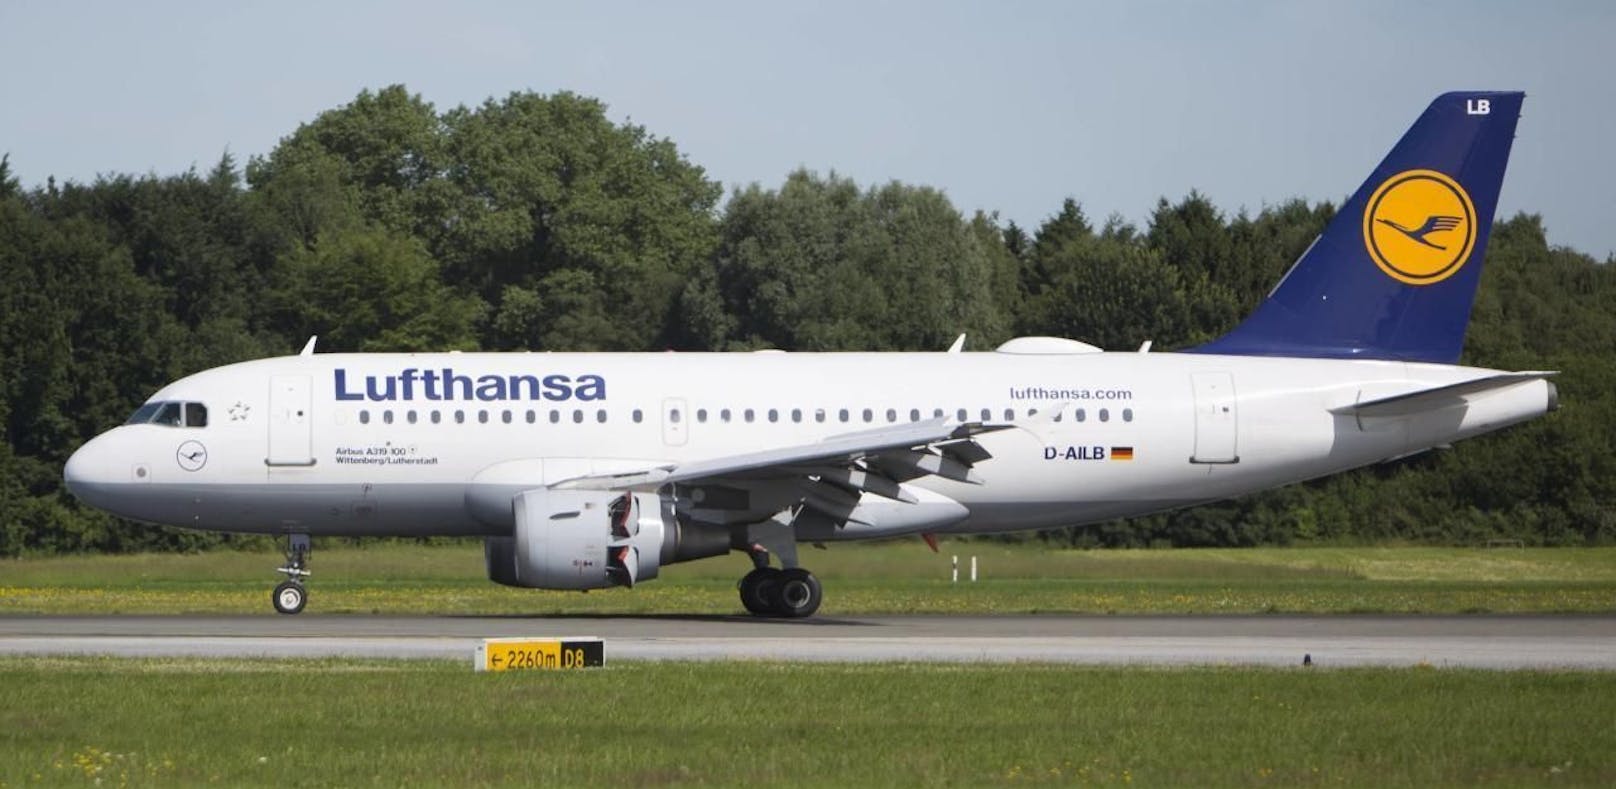 Die Lufthansa bestätigt den Vorfall und leitet eine Untersuchung ein.